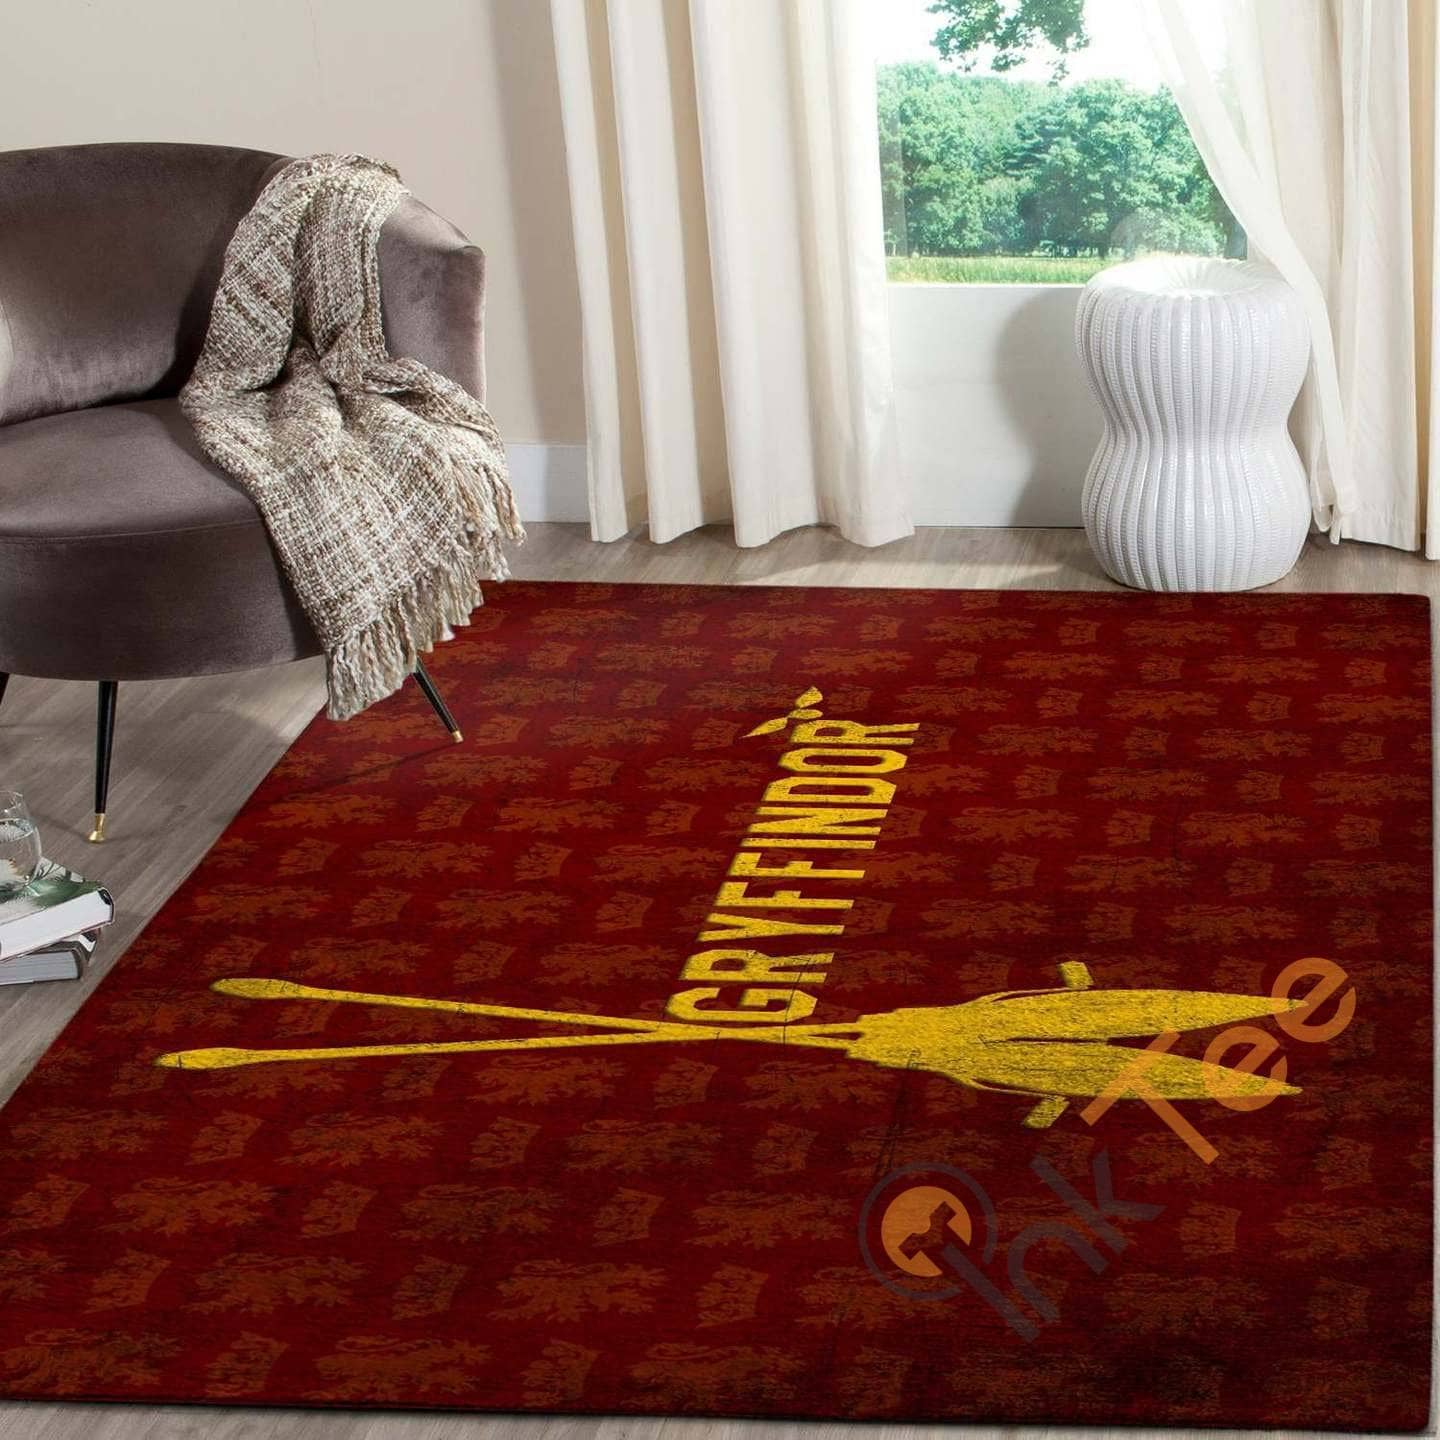 Harry Potter Gryffindor Living Room Carpet Floor Decor Beautiful Gift For Potter's Fan Hogwarts Rug